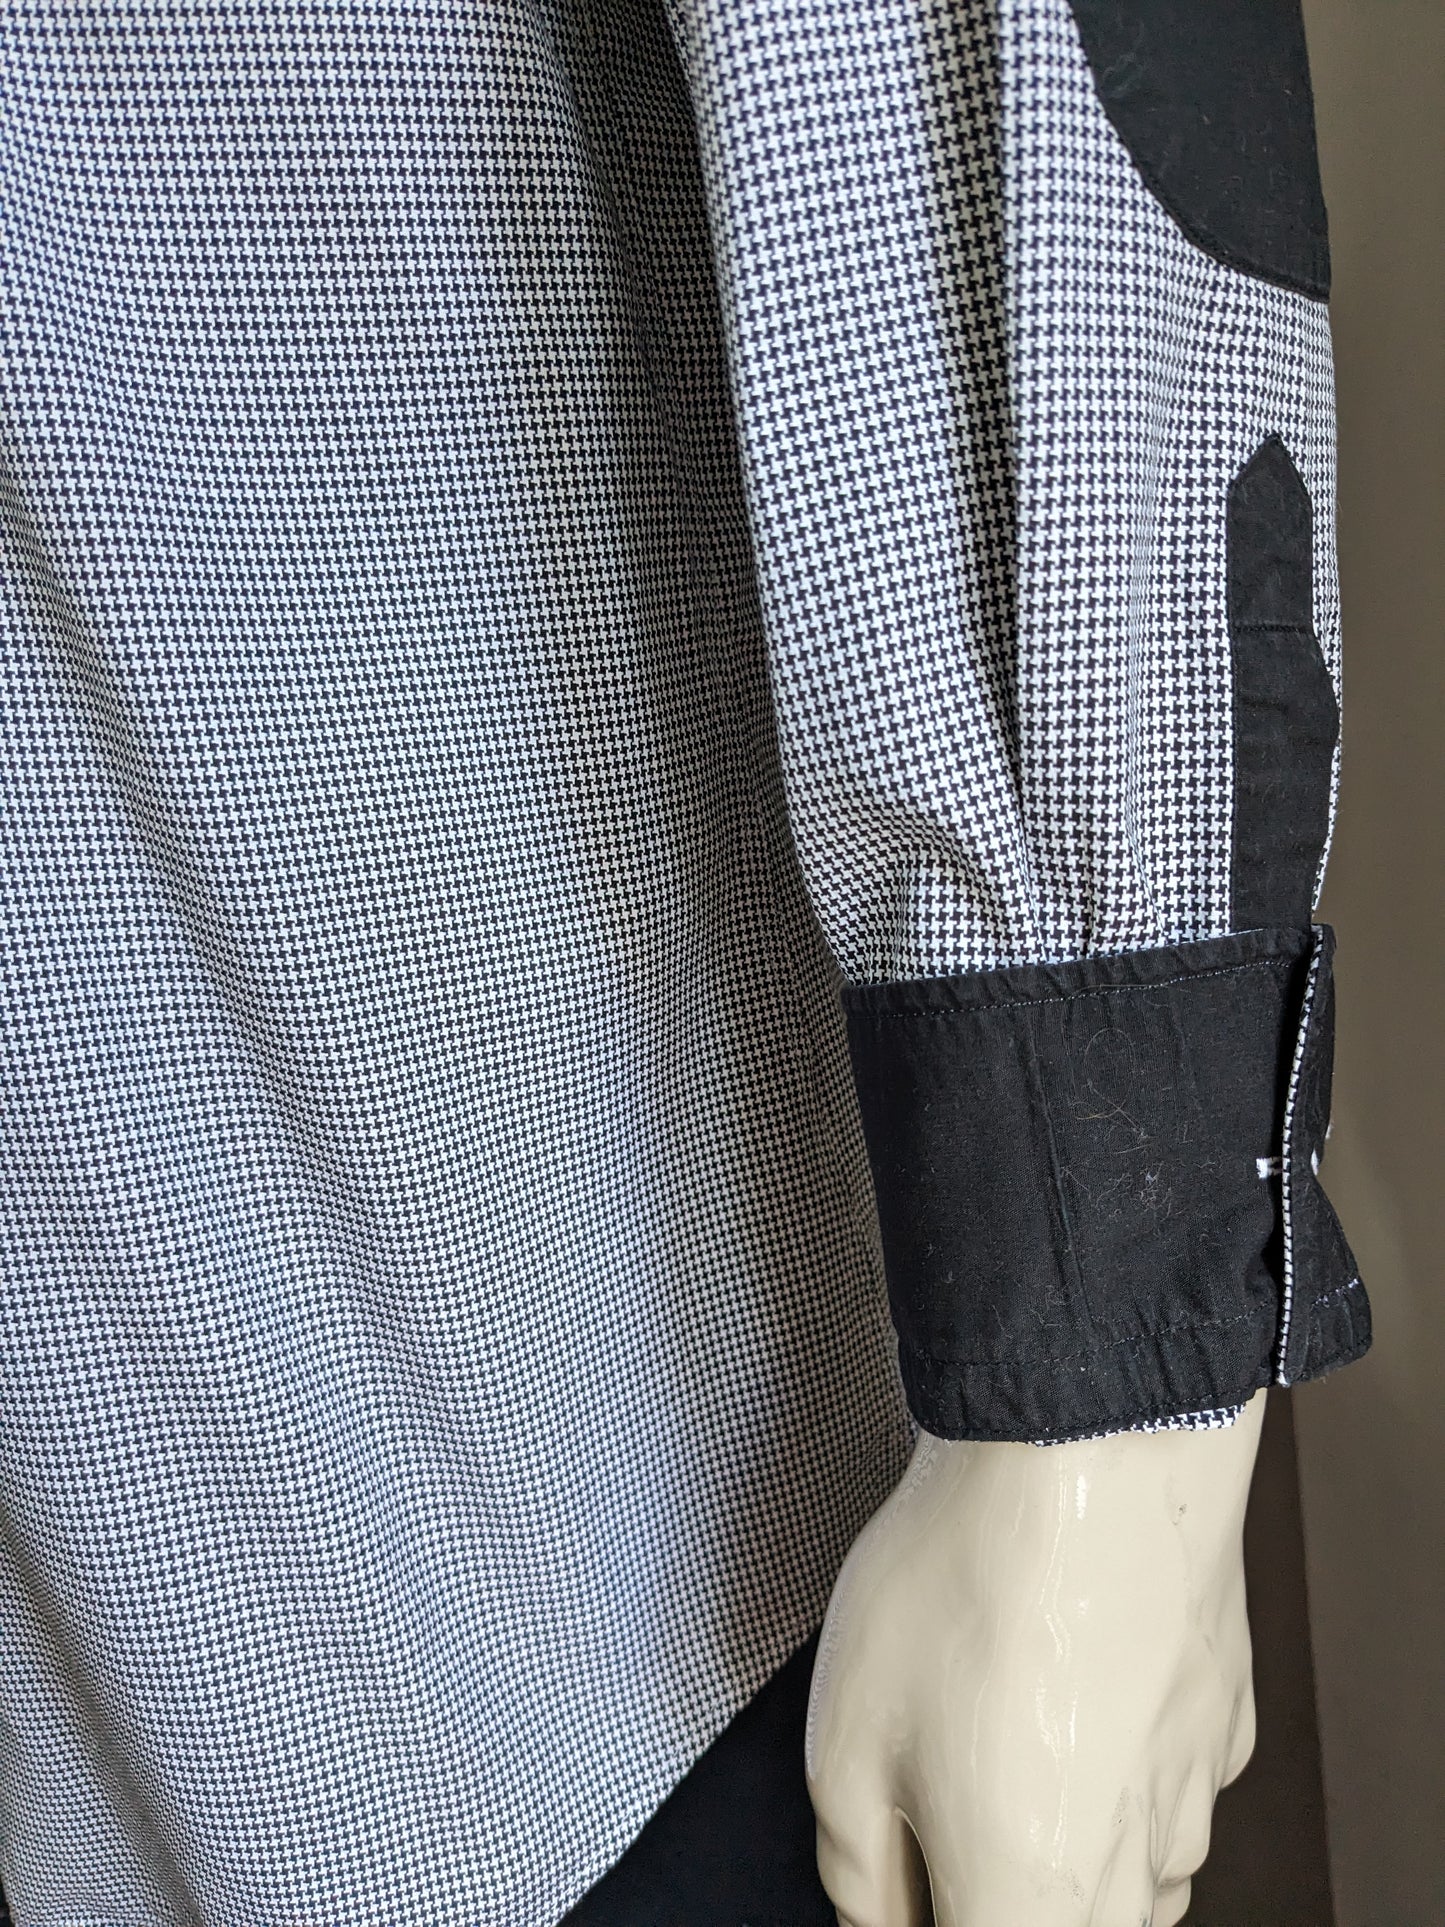 Camicia Blumfontain con patch di gomito. Motivo in bianco e nero. Dimensione 2xl / xxl.